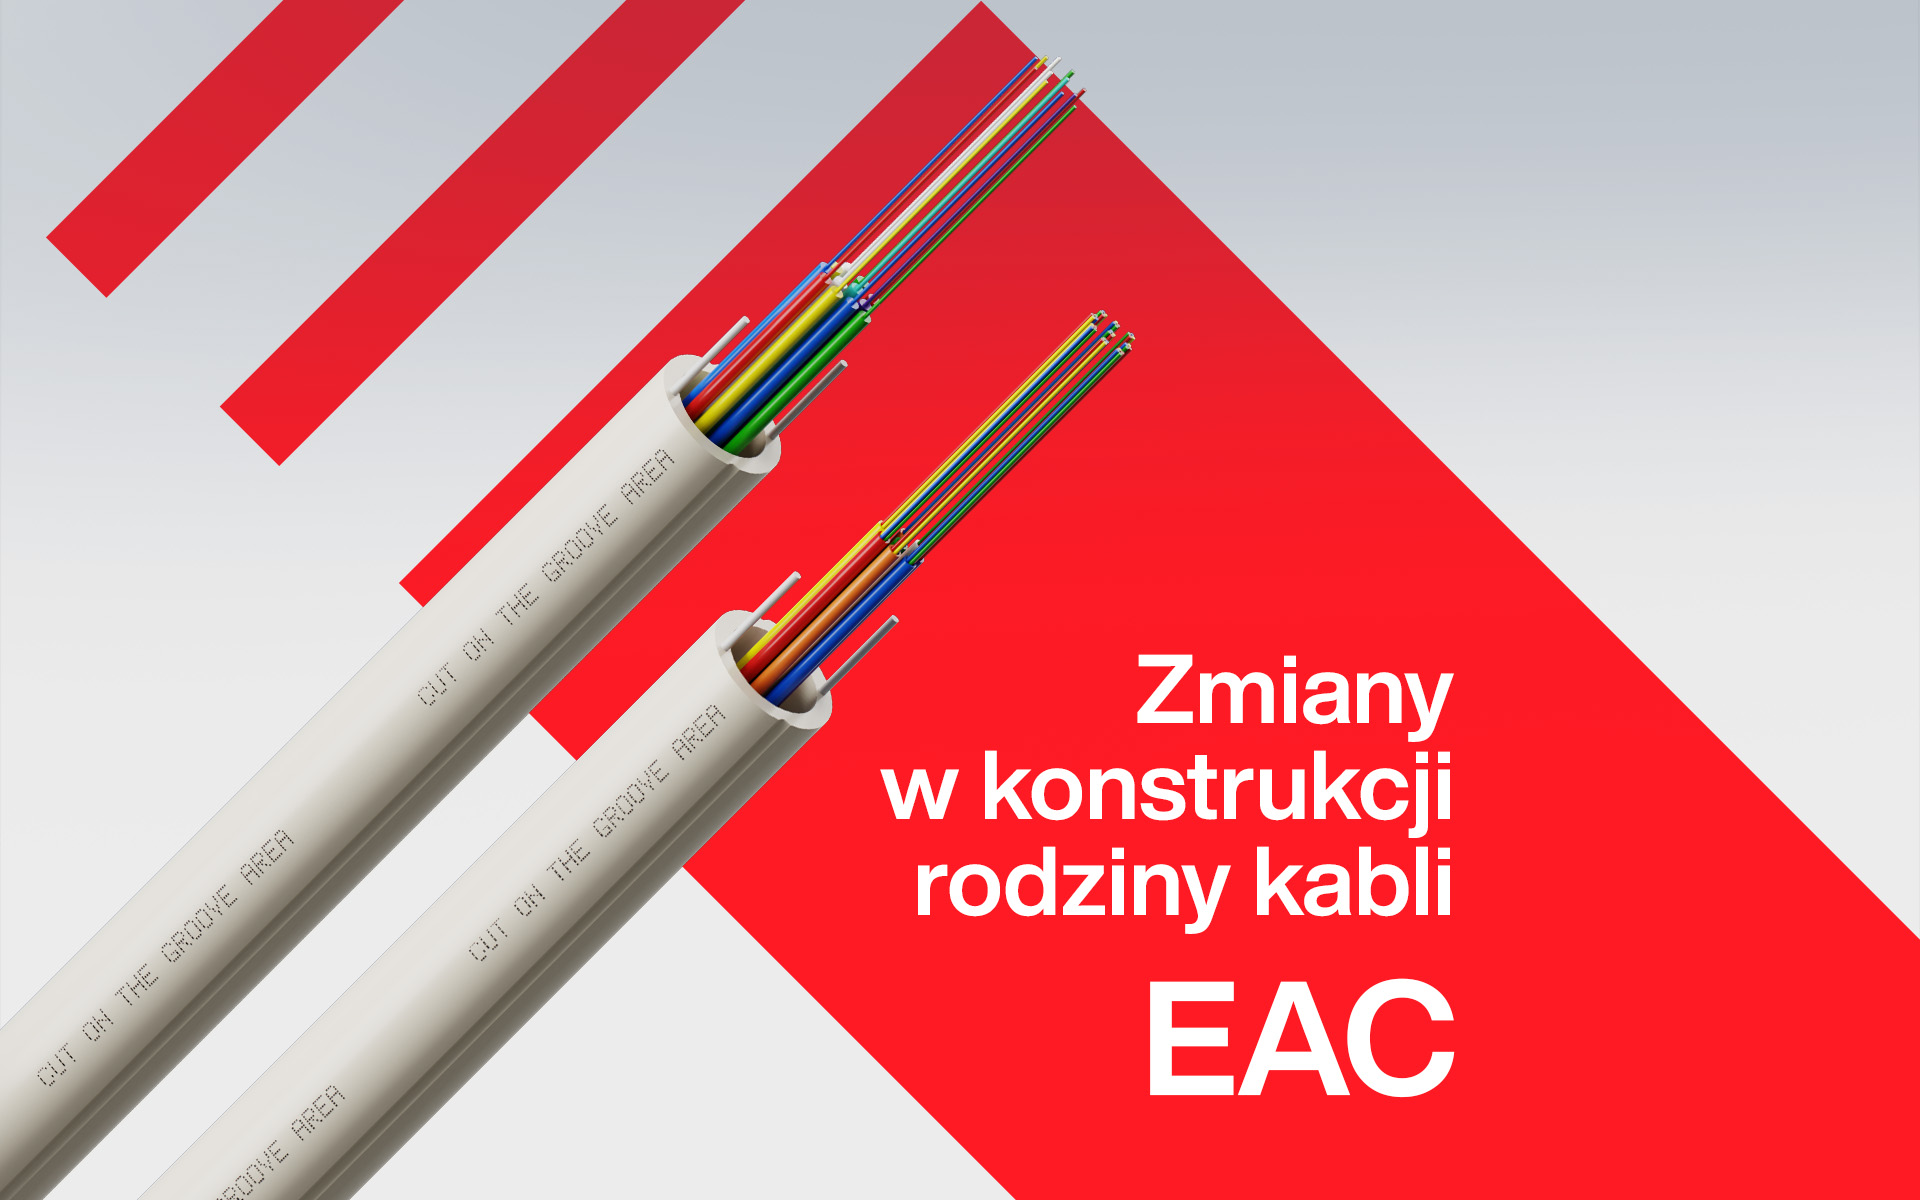 Zmiany w konstrukcji rodziny kabli EAC!